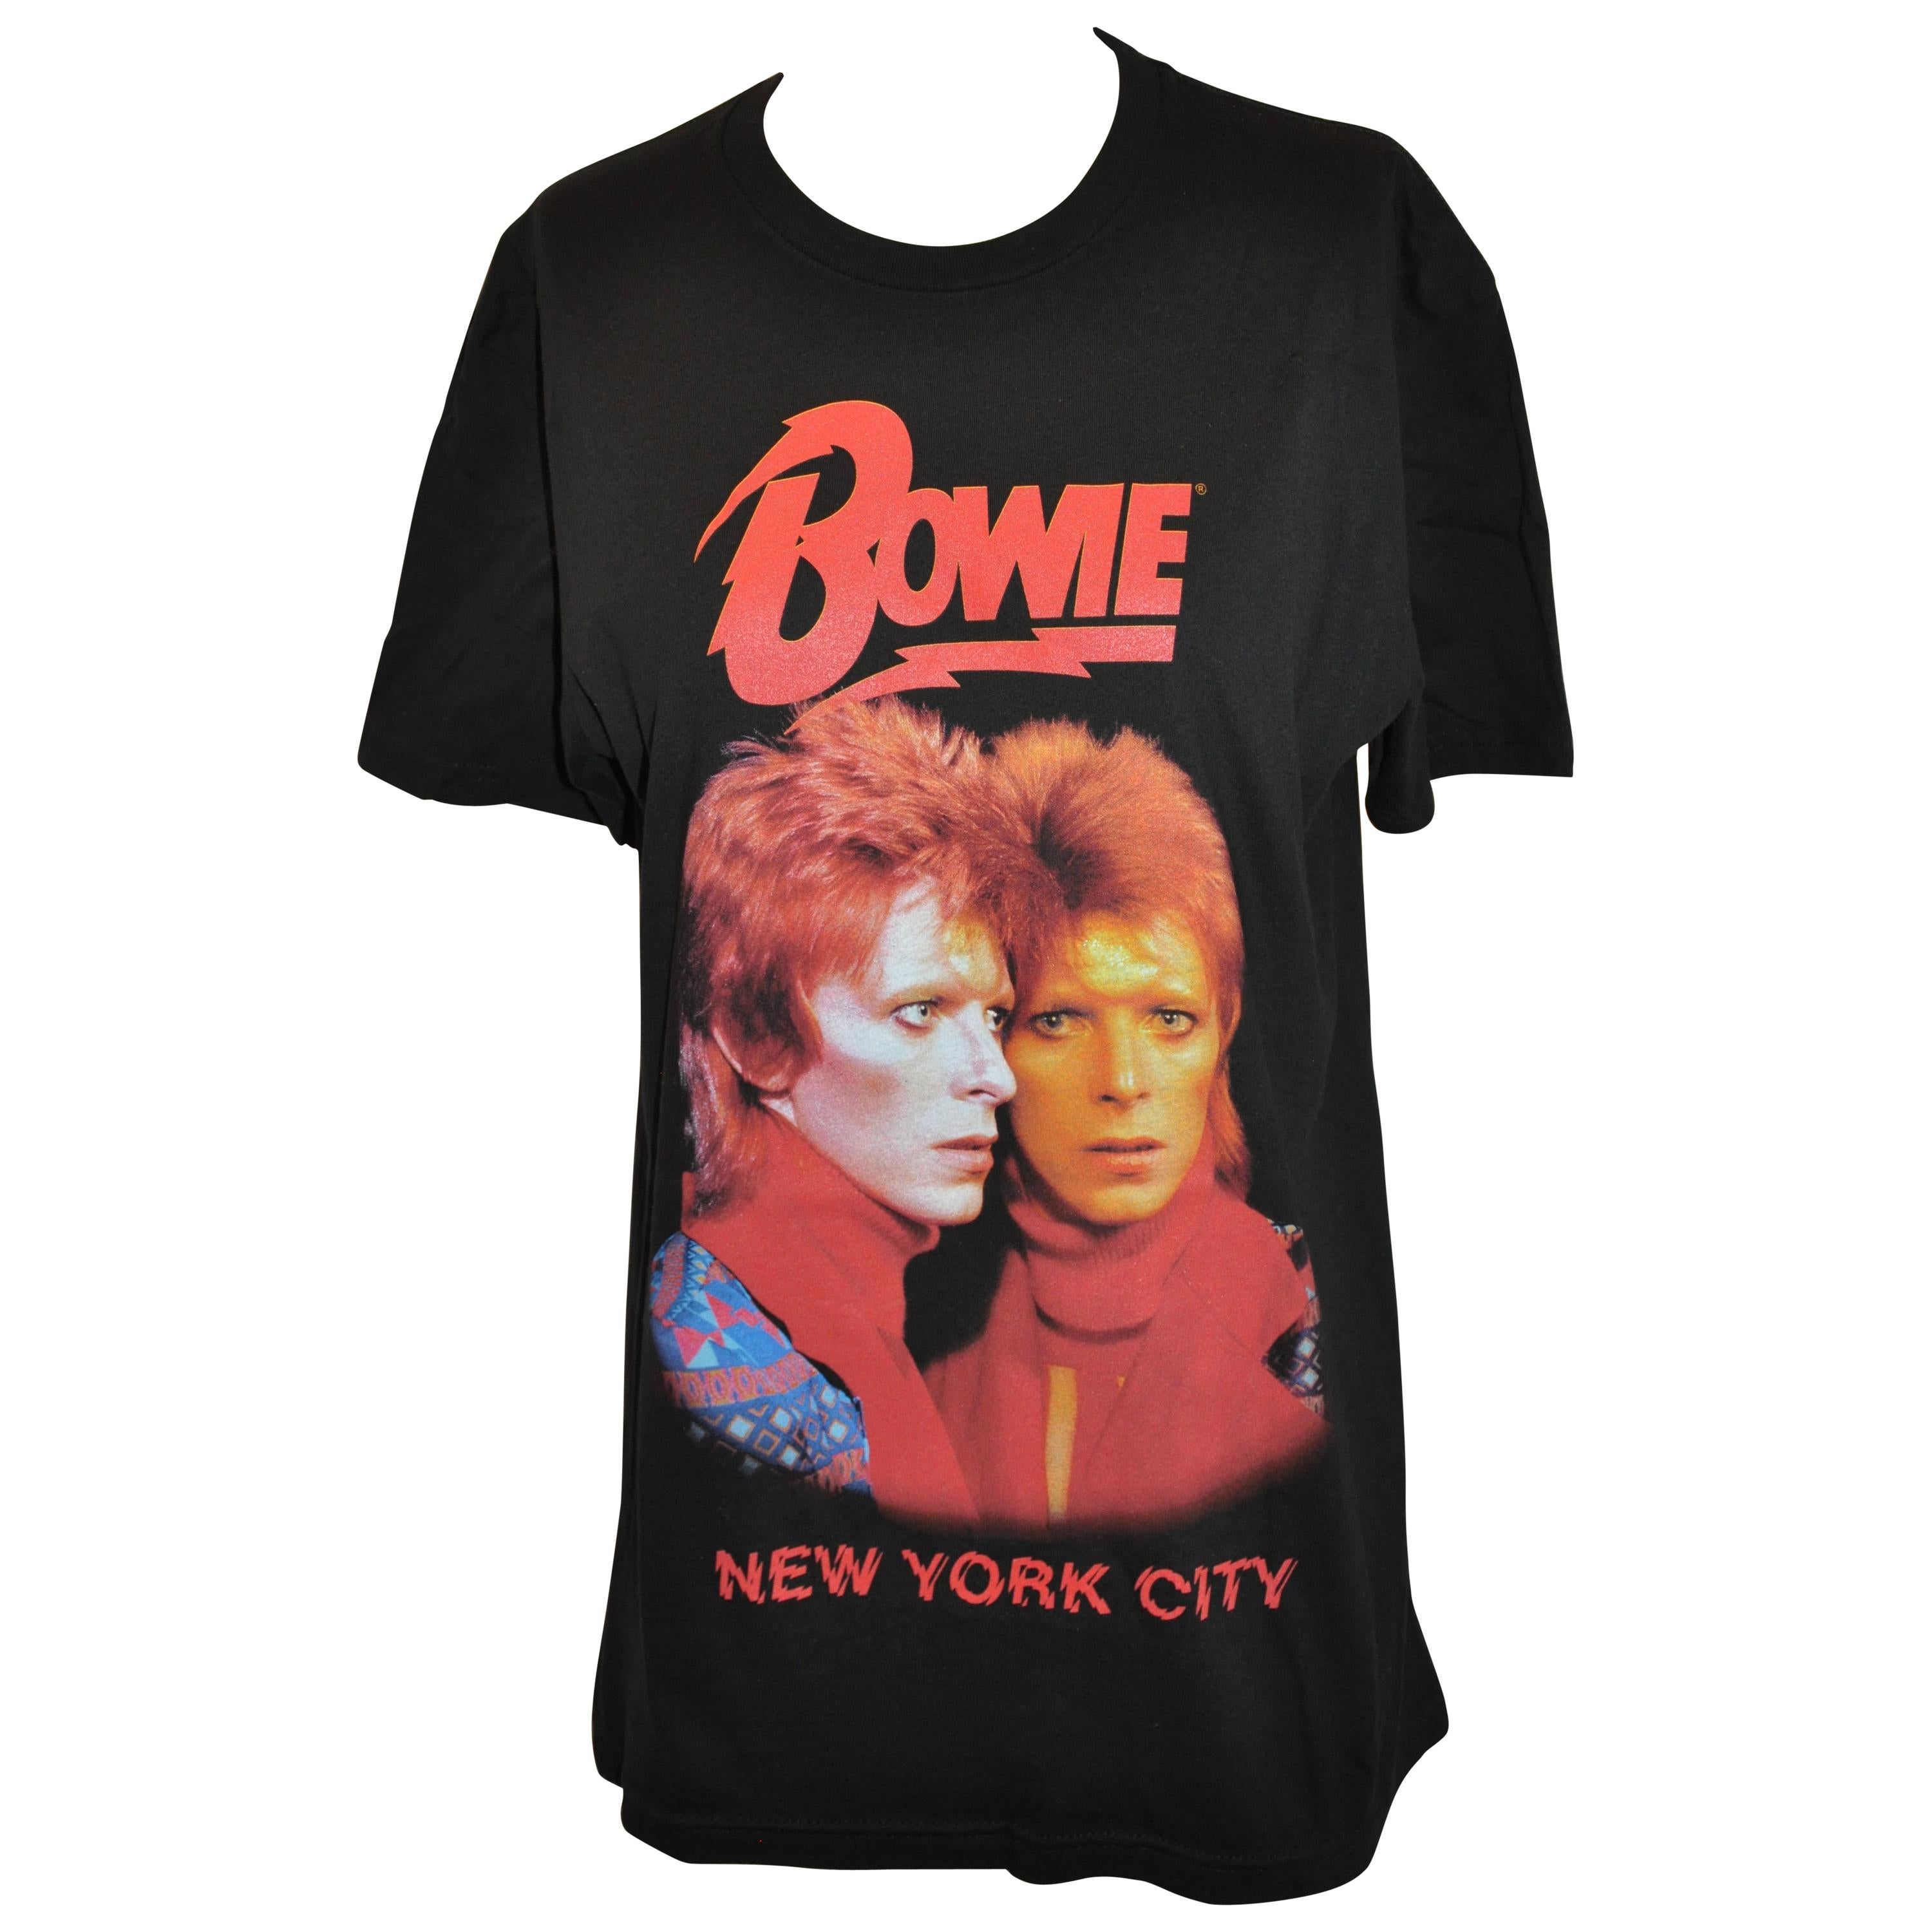 David Bowie "New York Retrospective Exhibition" "Double Portrait" Black Tee For Sale